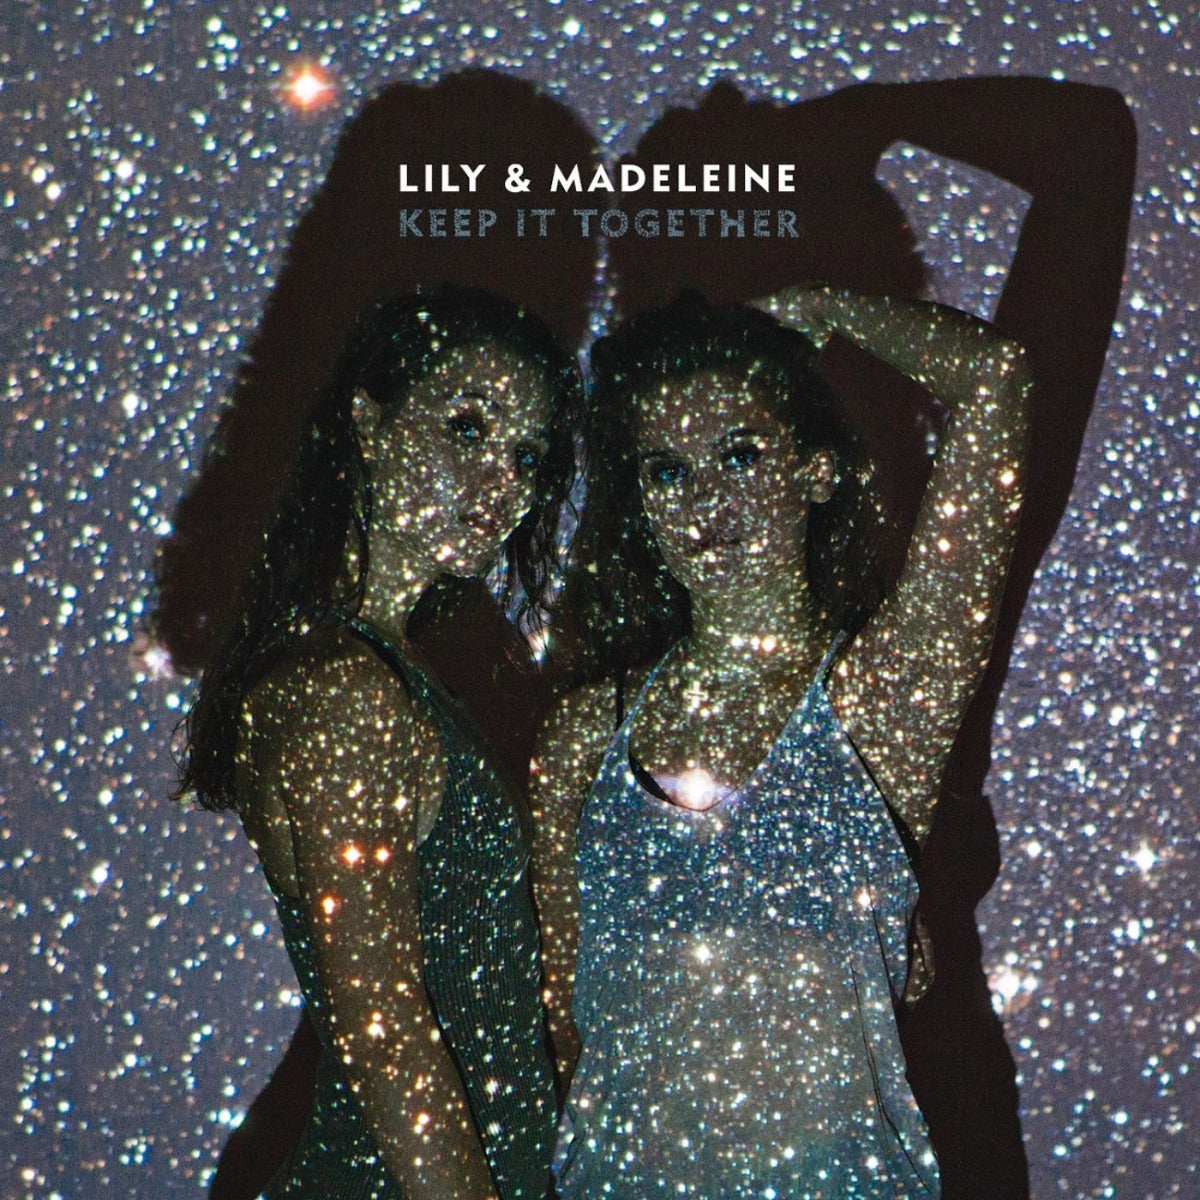 Lily & Madeleine | Keep It Together (180 Gram Vinyl, Digital Download Card) | Vinyl